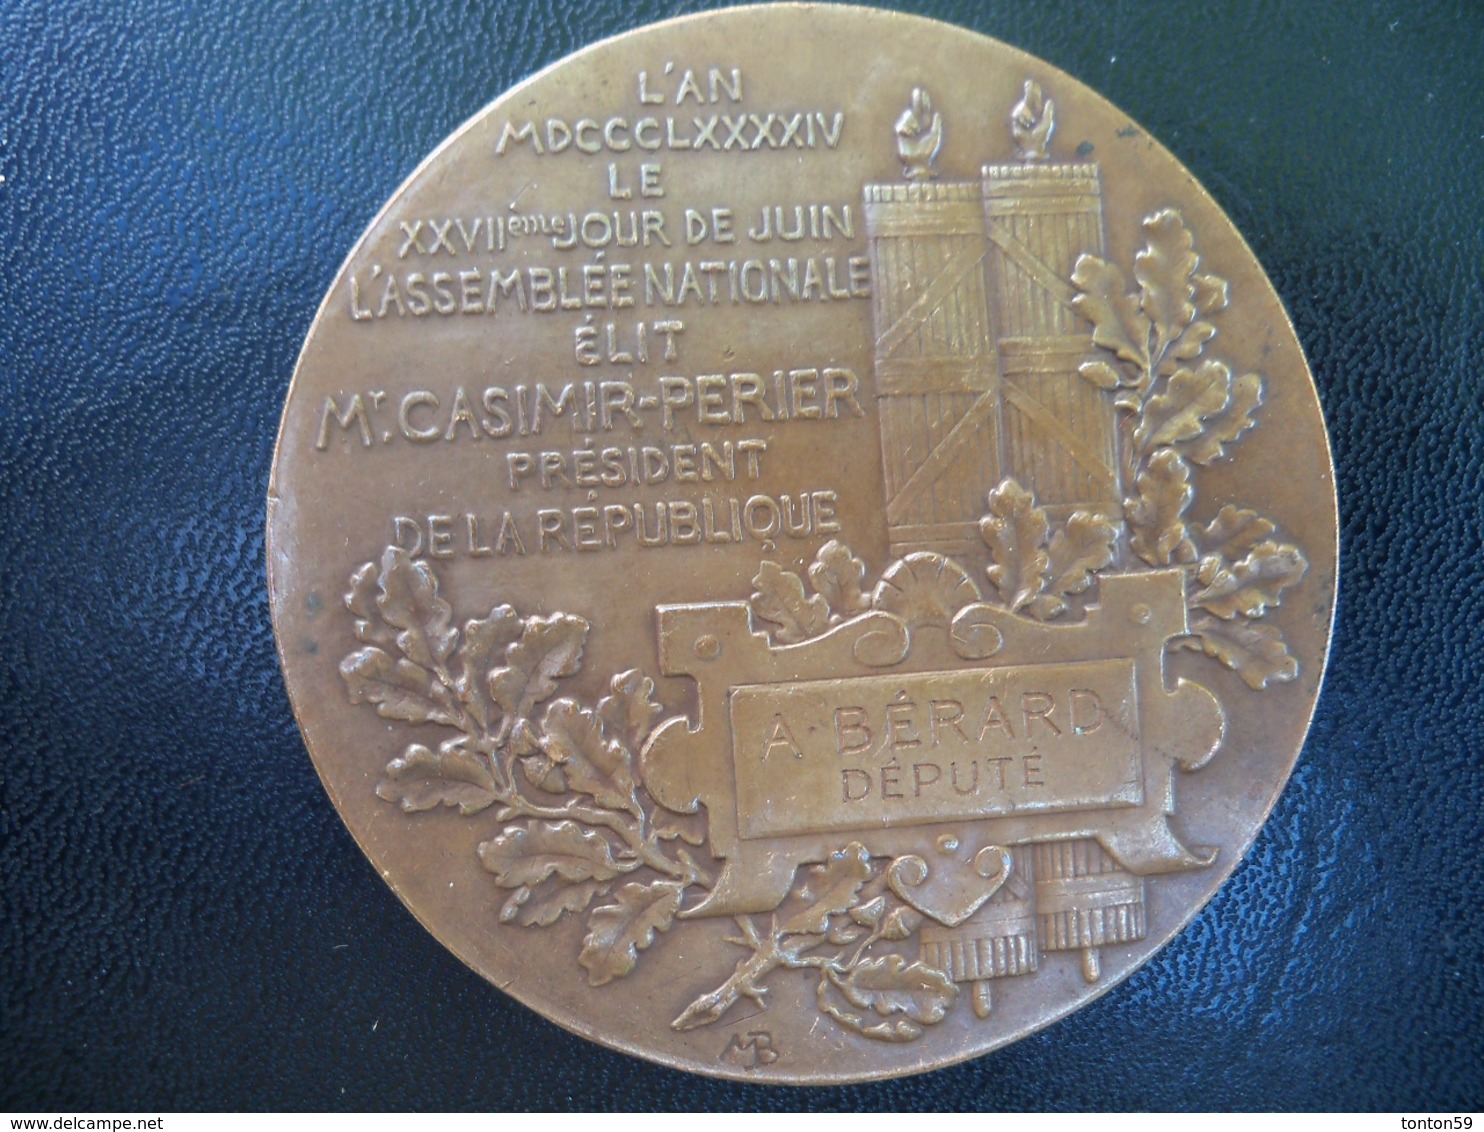 Ancienne Médaille Bronze Commémorative Signée Max Bourgeois élection Casimir Perier Attribuée Au Député A BERARD. - Royaux / De Noblesse